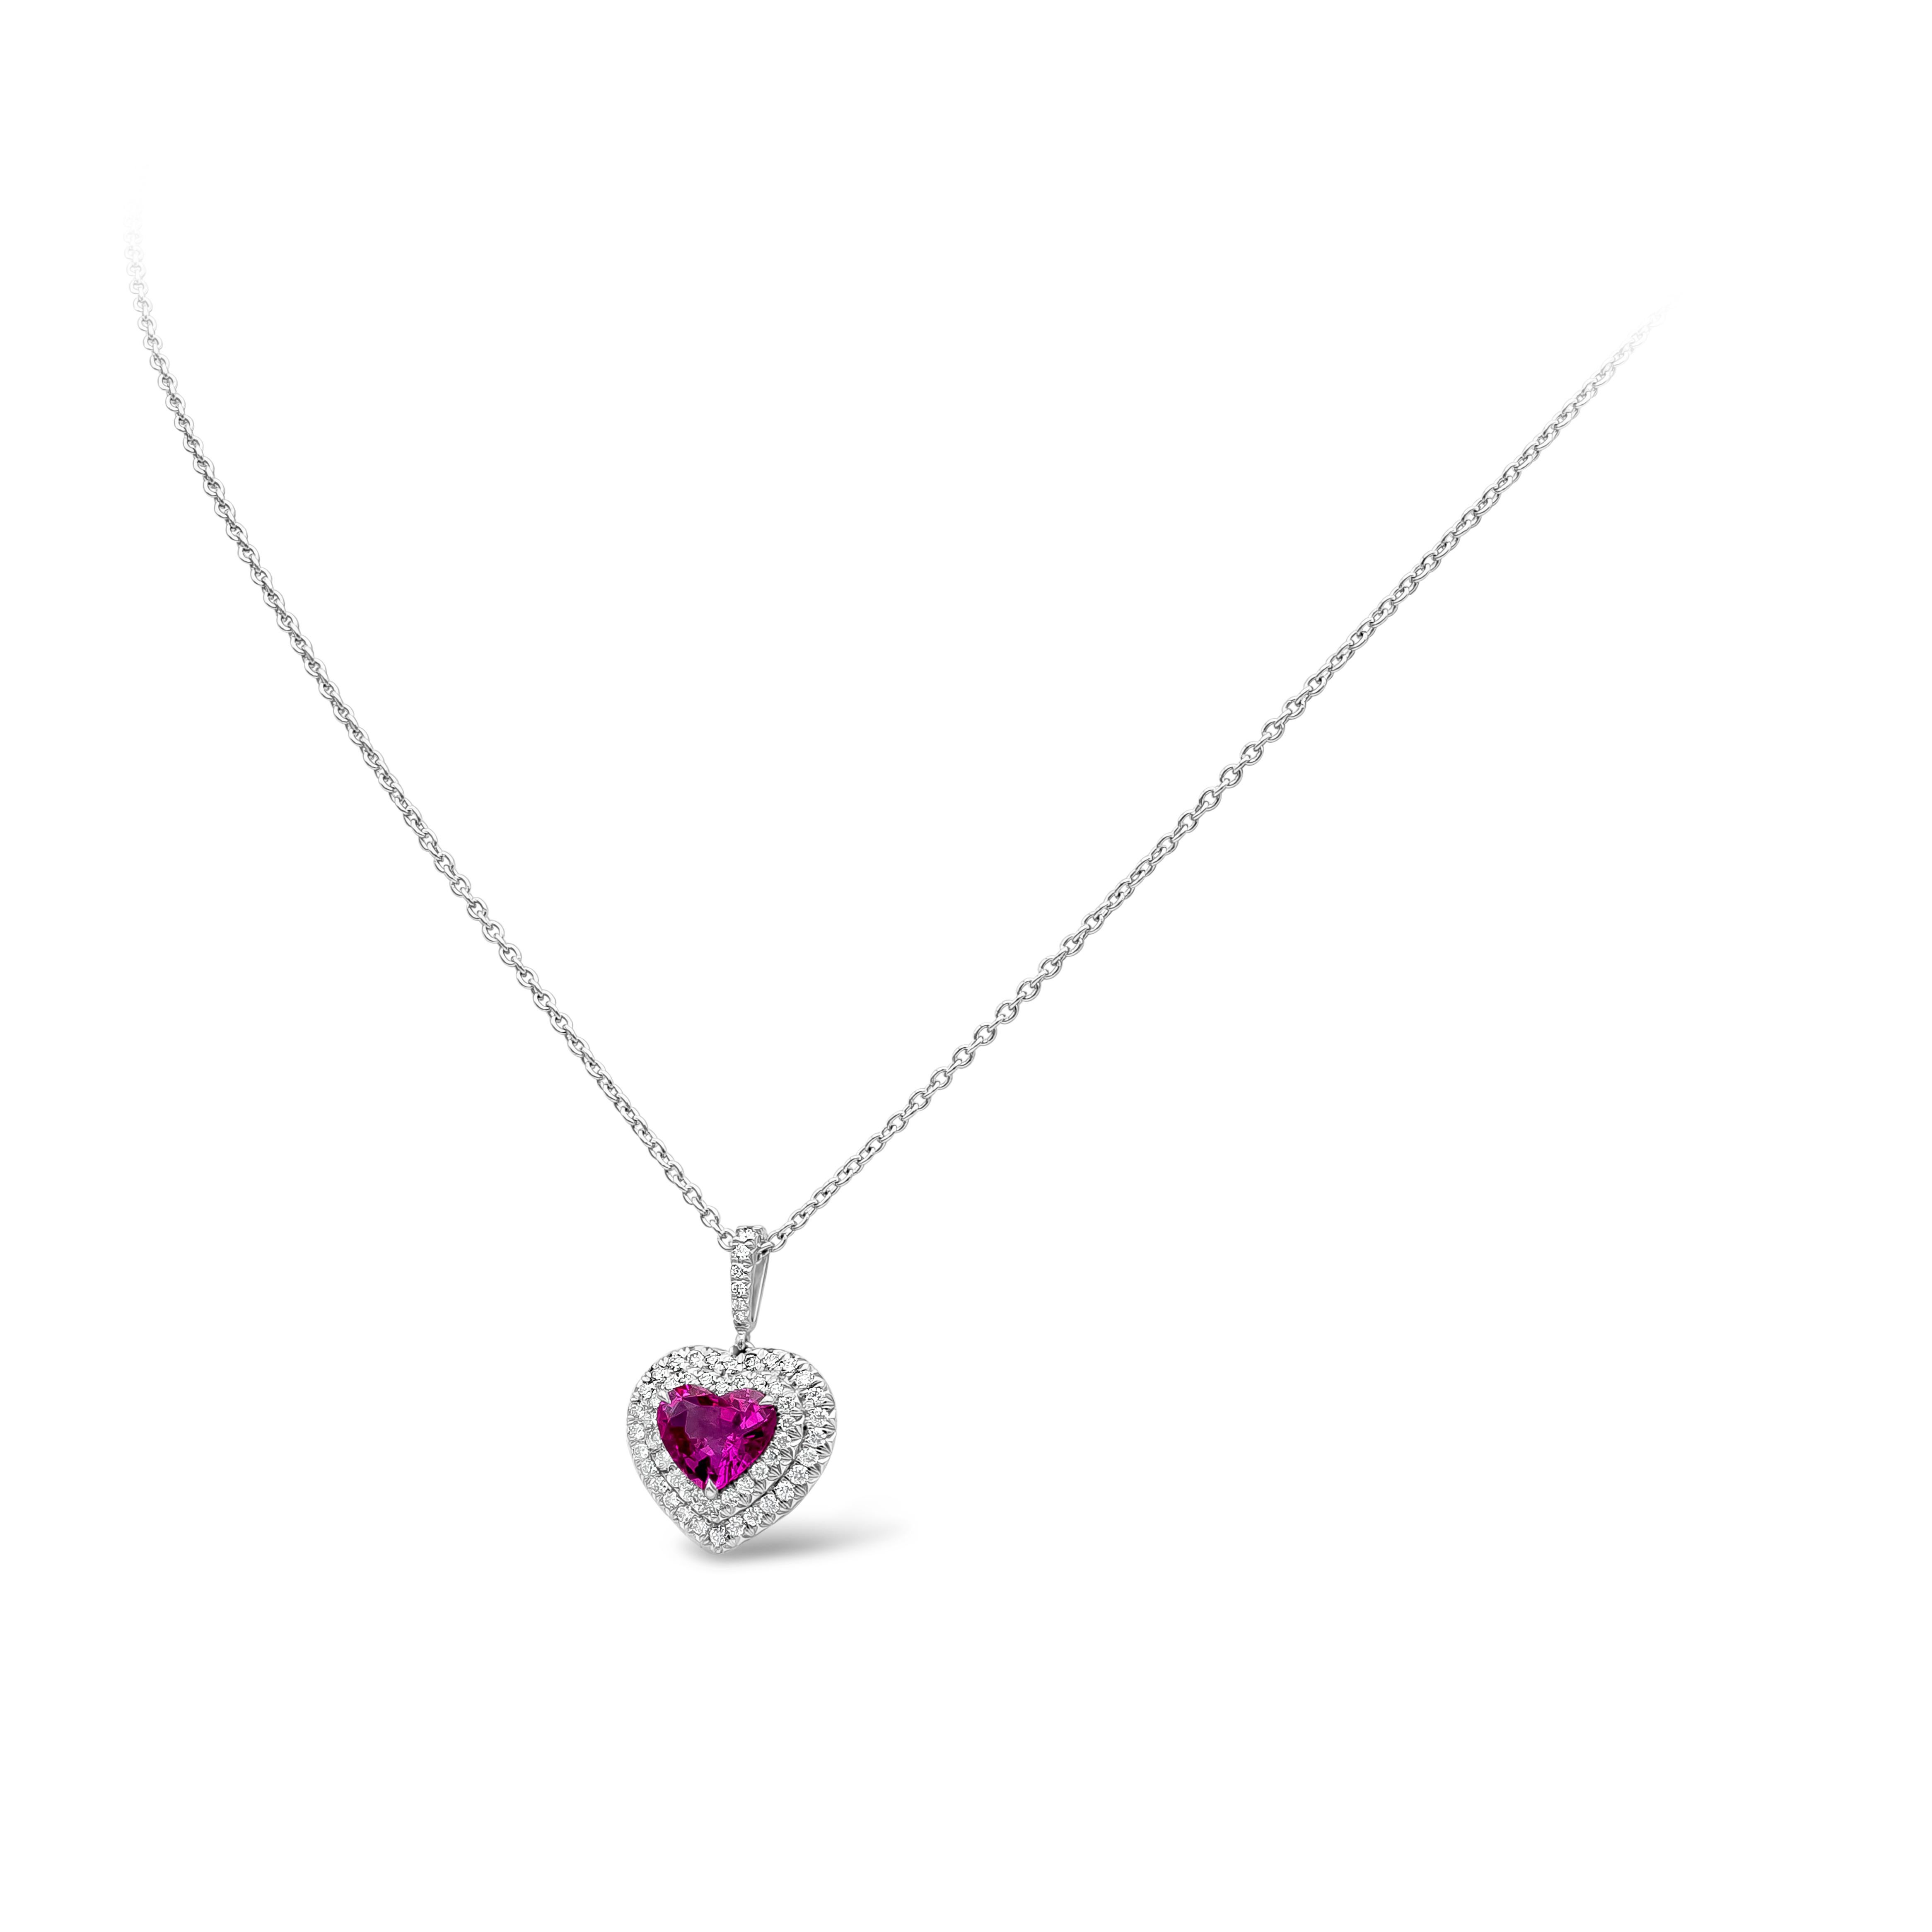 Un magnifique collier pendentif polyvalent mettant en valeur un saphir rose en forme de cœur de 1,82 carat, certifié par le GIA comme ne présentant aucune indication de traitement thermique. La pierre centrale est entourée de deux rangées de